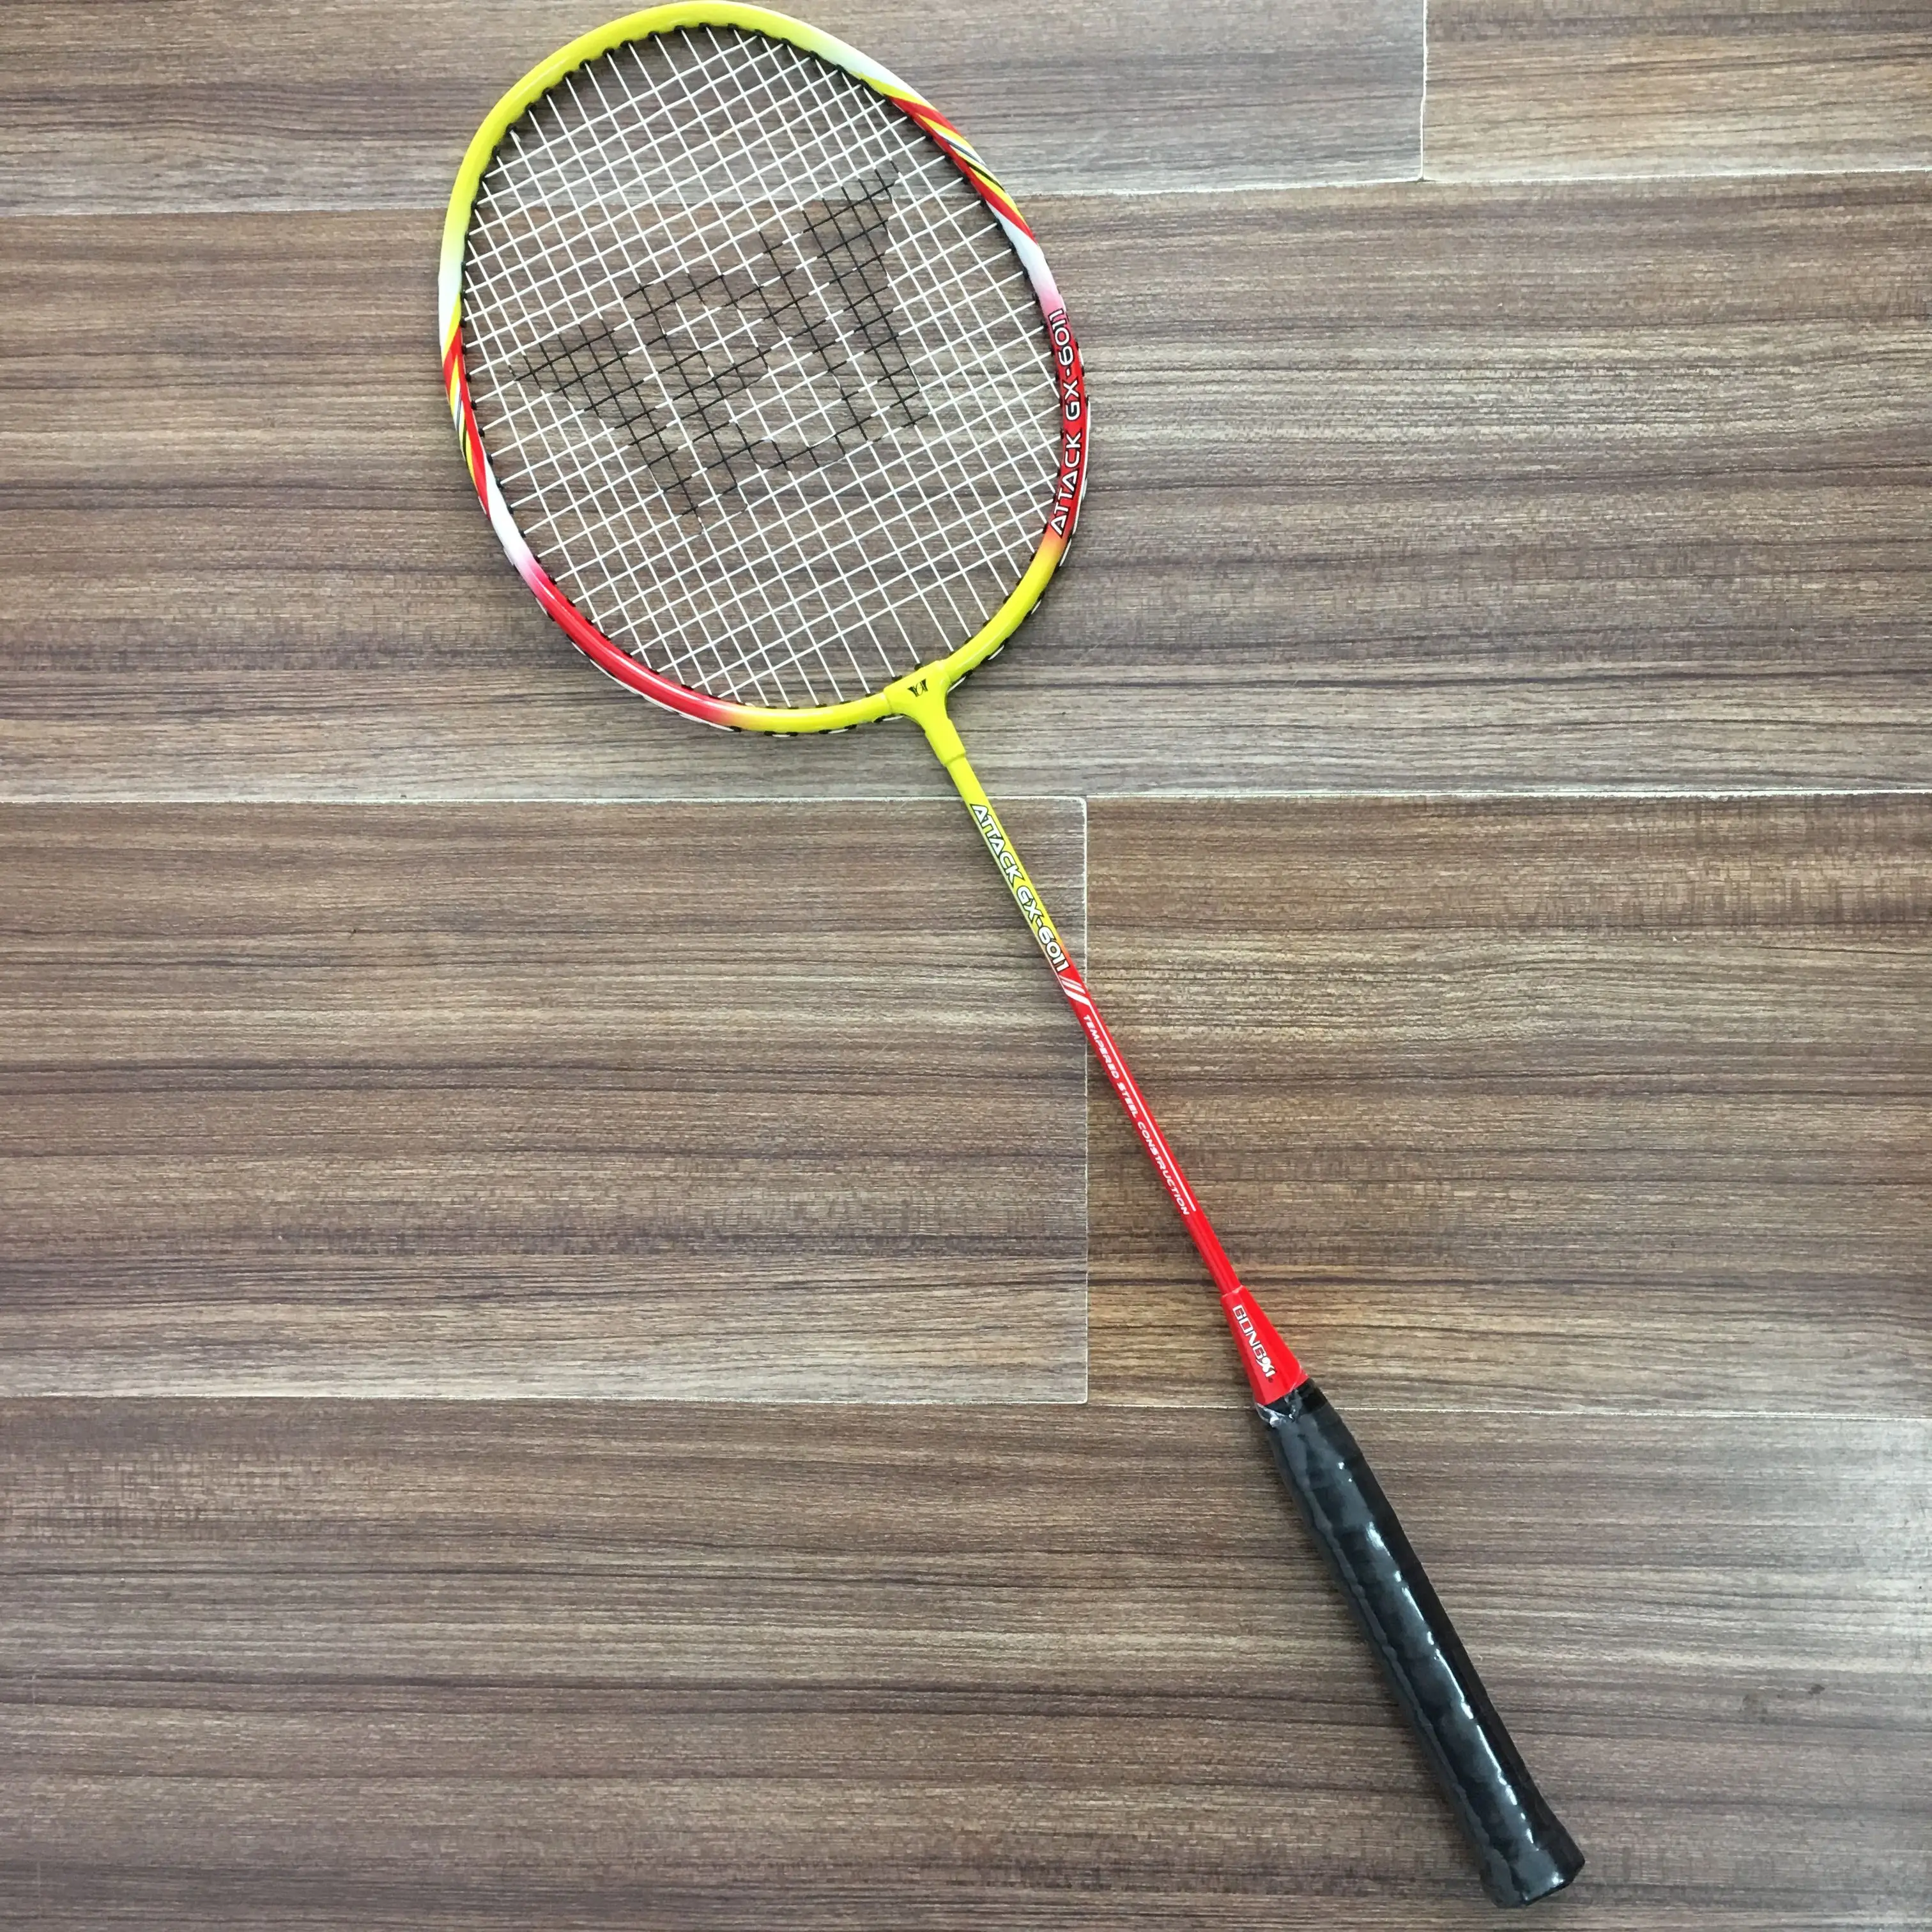 Source New brand best original GX-6011 alumandsteel badminton racket on m.alibaba